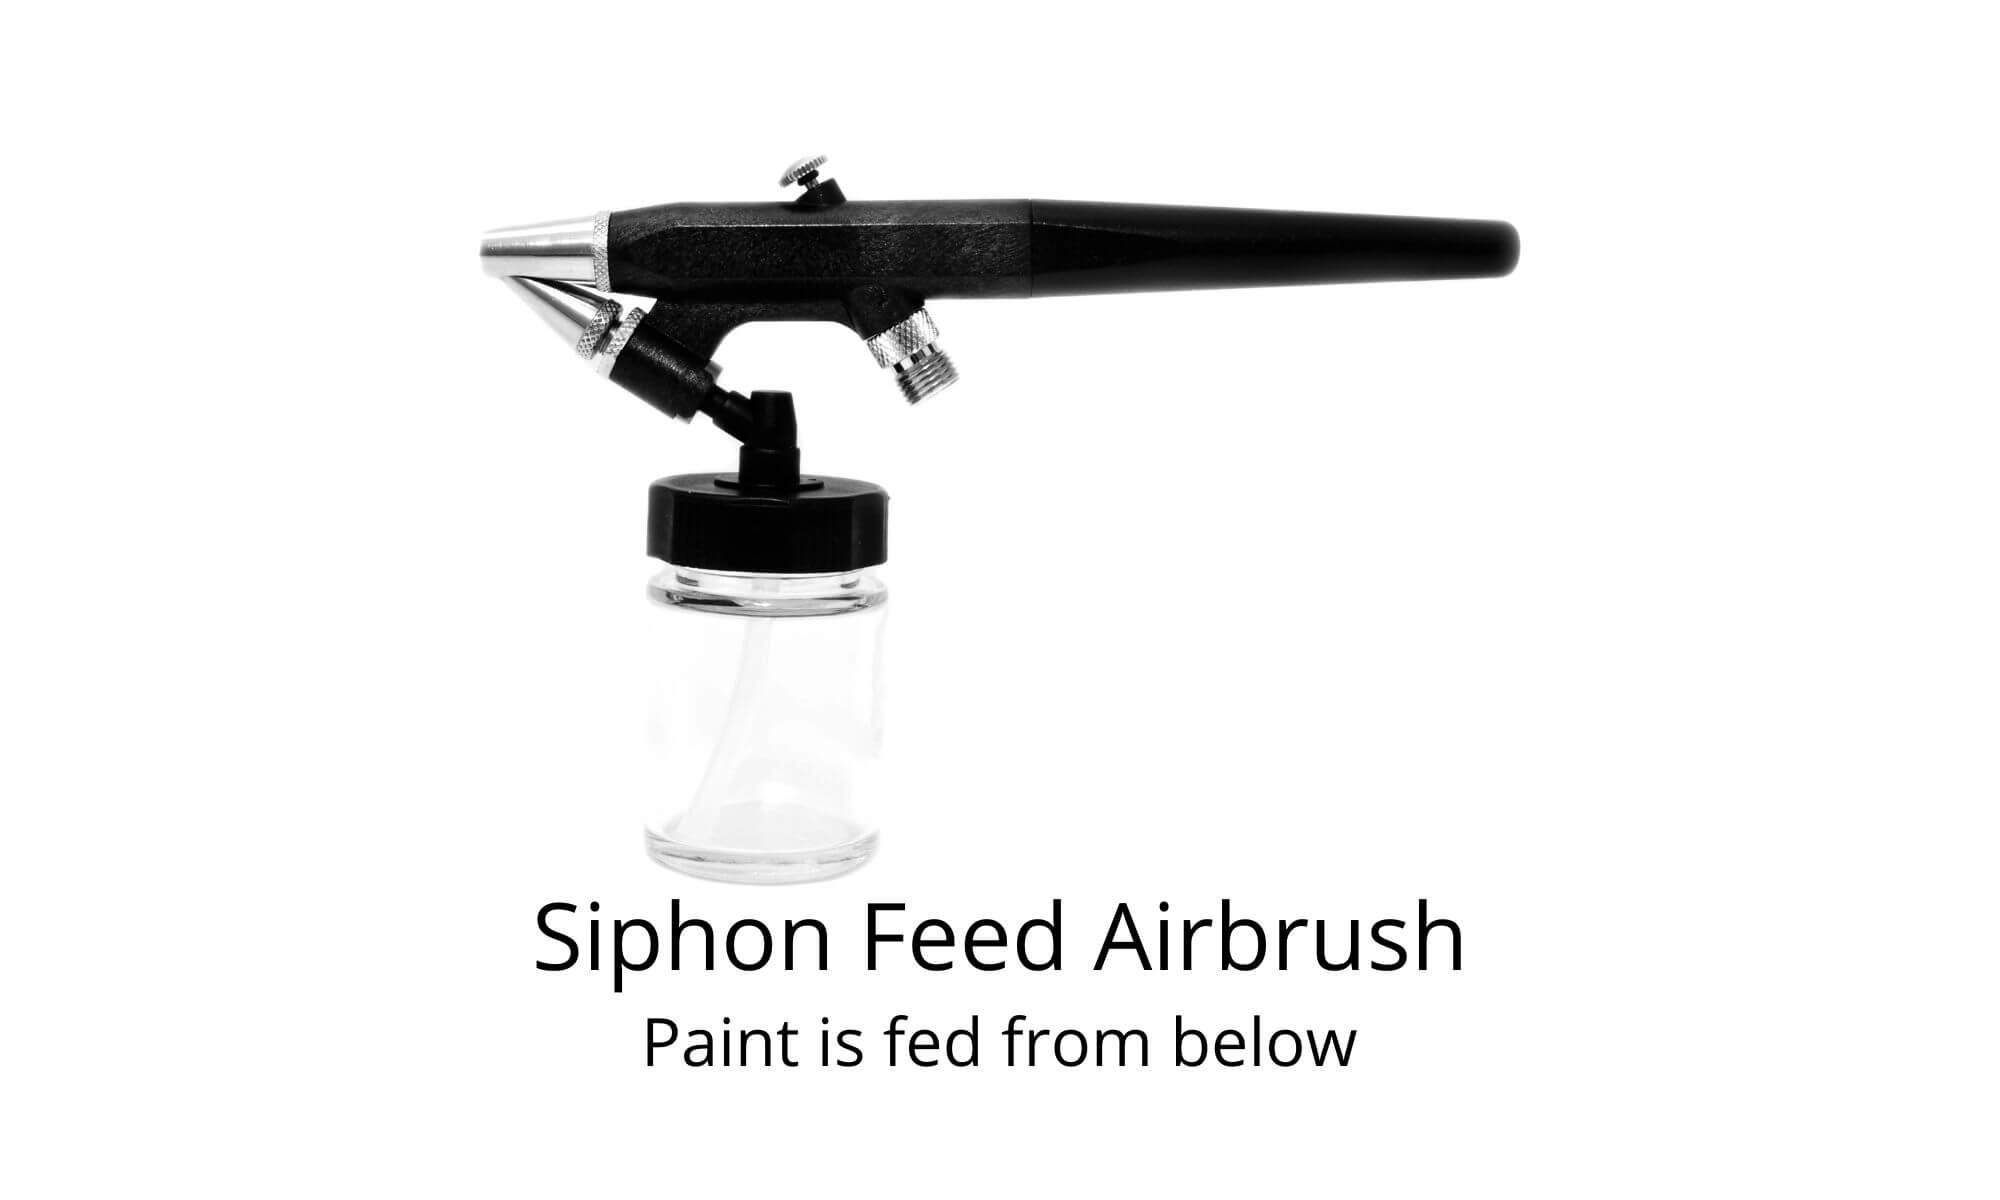 Siphon feed airbrush guns